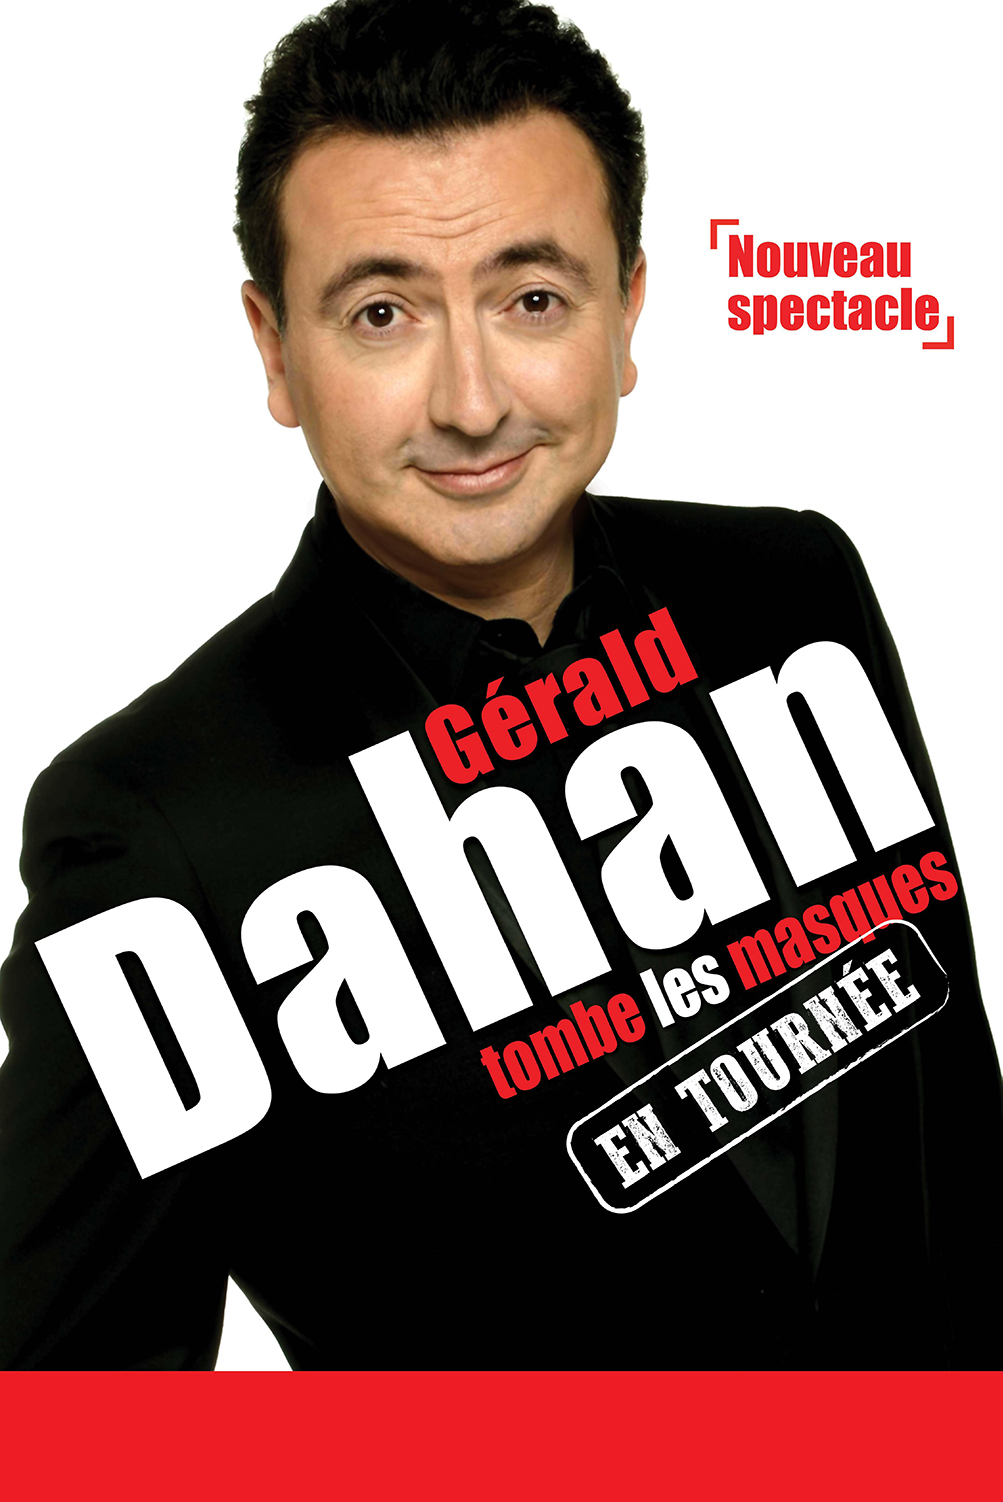 Gerard Dahan spectacle